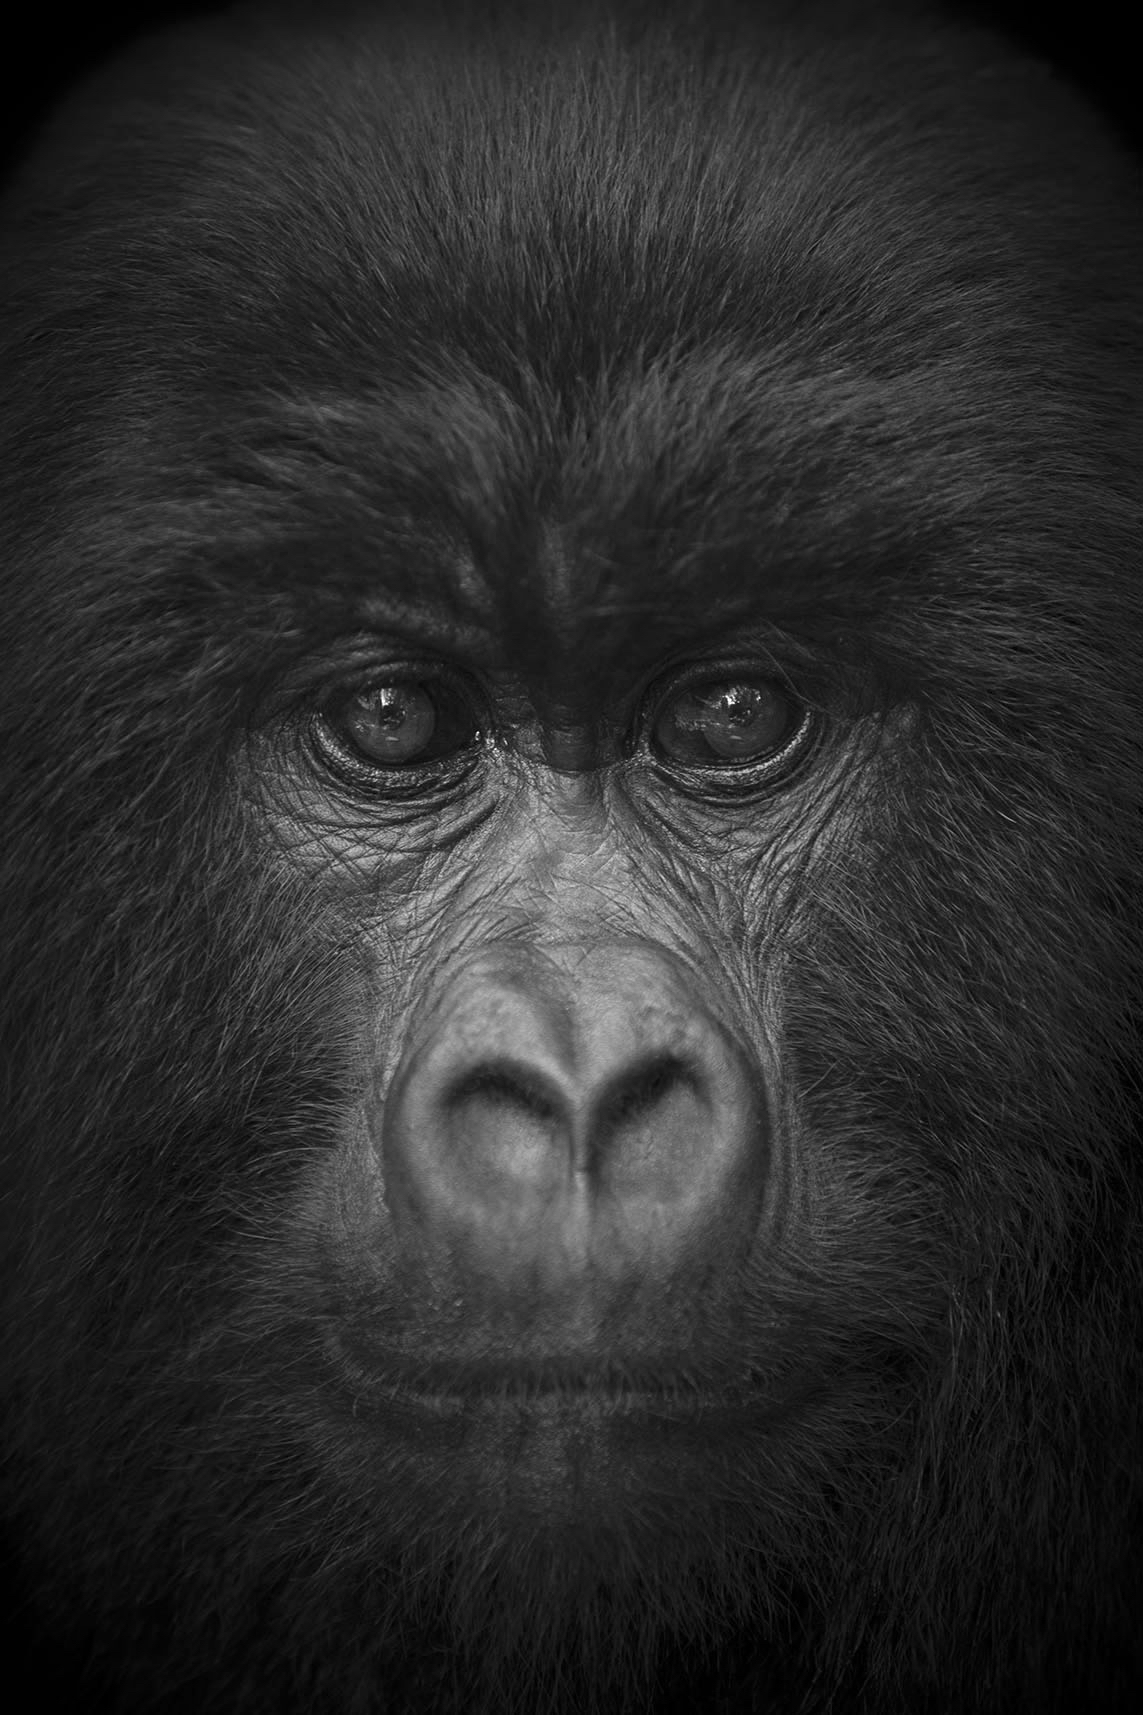 gorilla björn persson.jpg